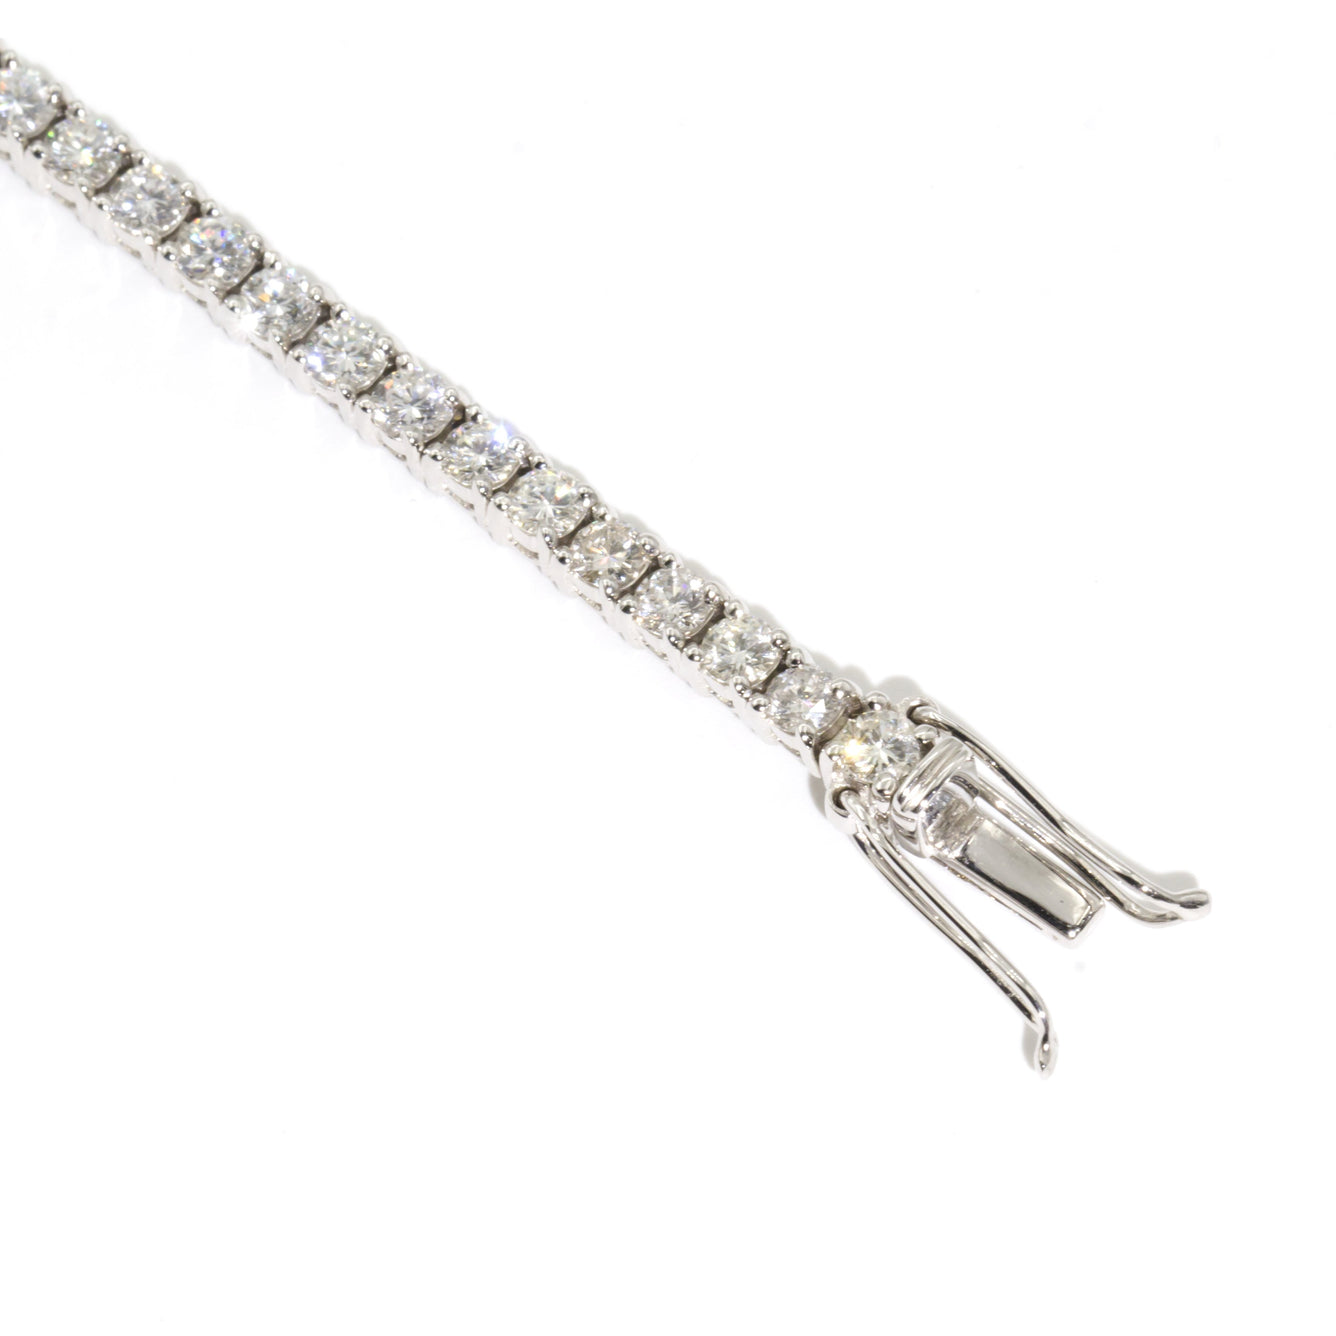 Winter 18 Carat White Gold Diamond Tennis Bracelet Bracelets/Bangles Imperial Jewellery - Auctions, Antique, Vintage & Estate